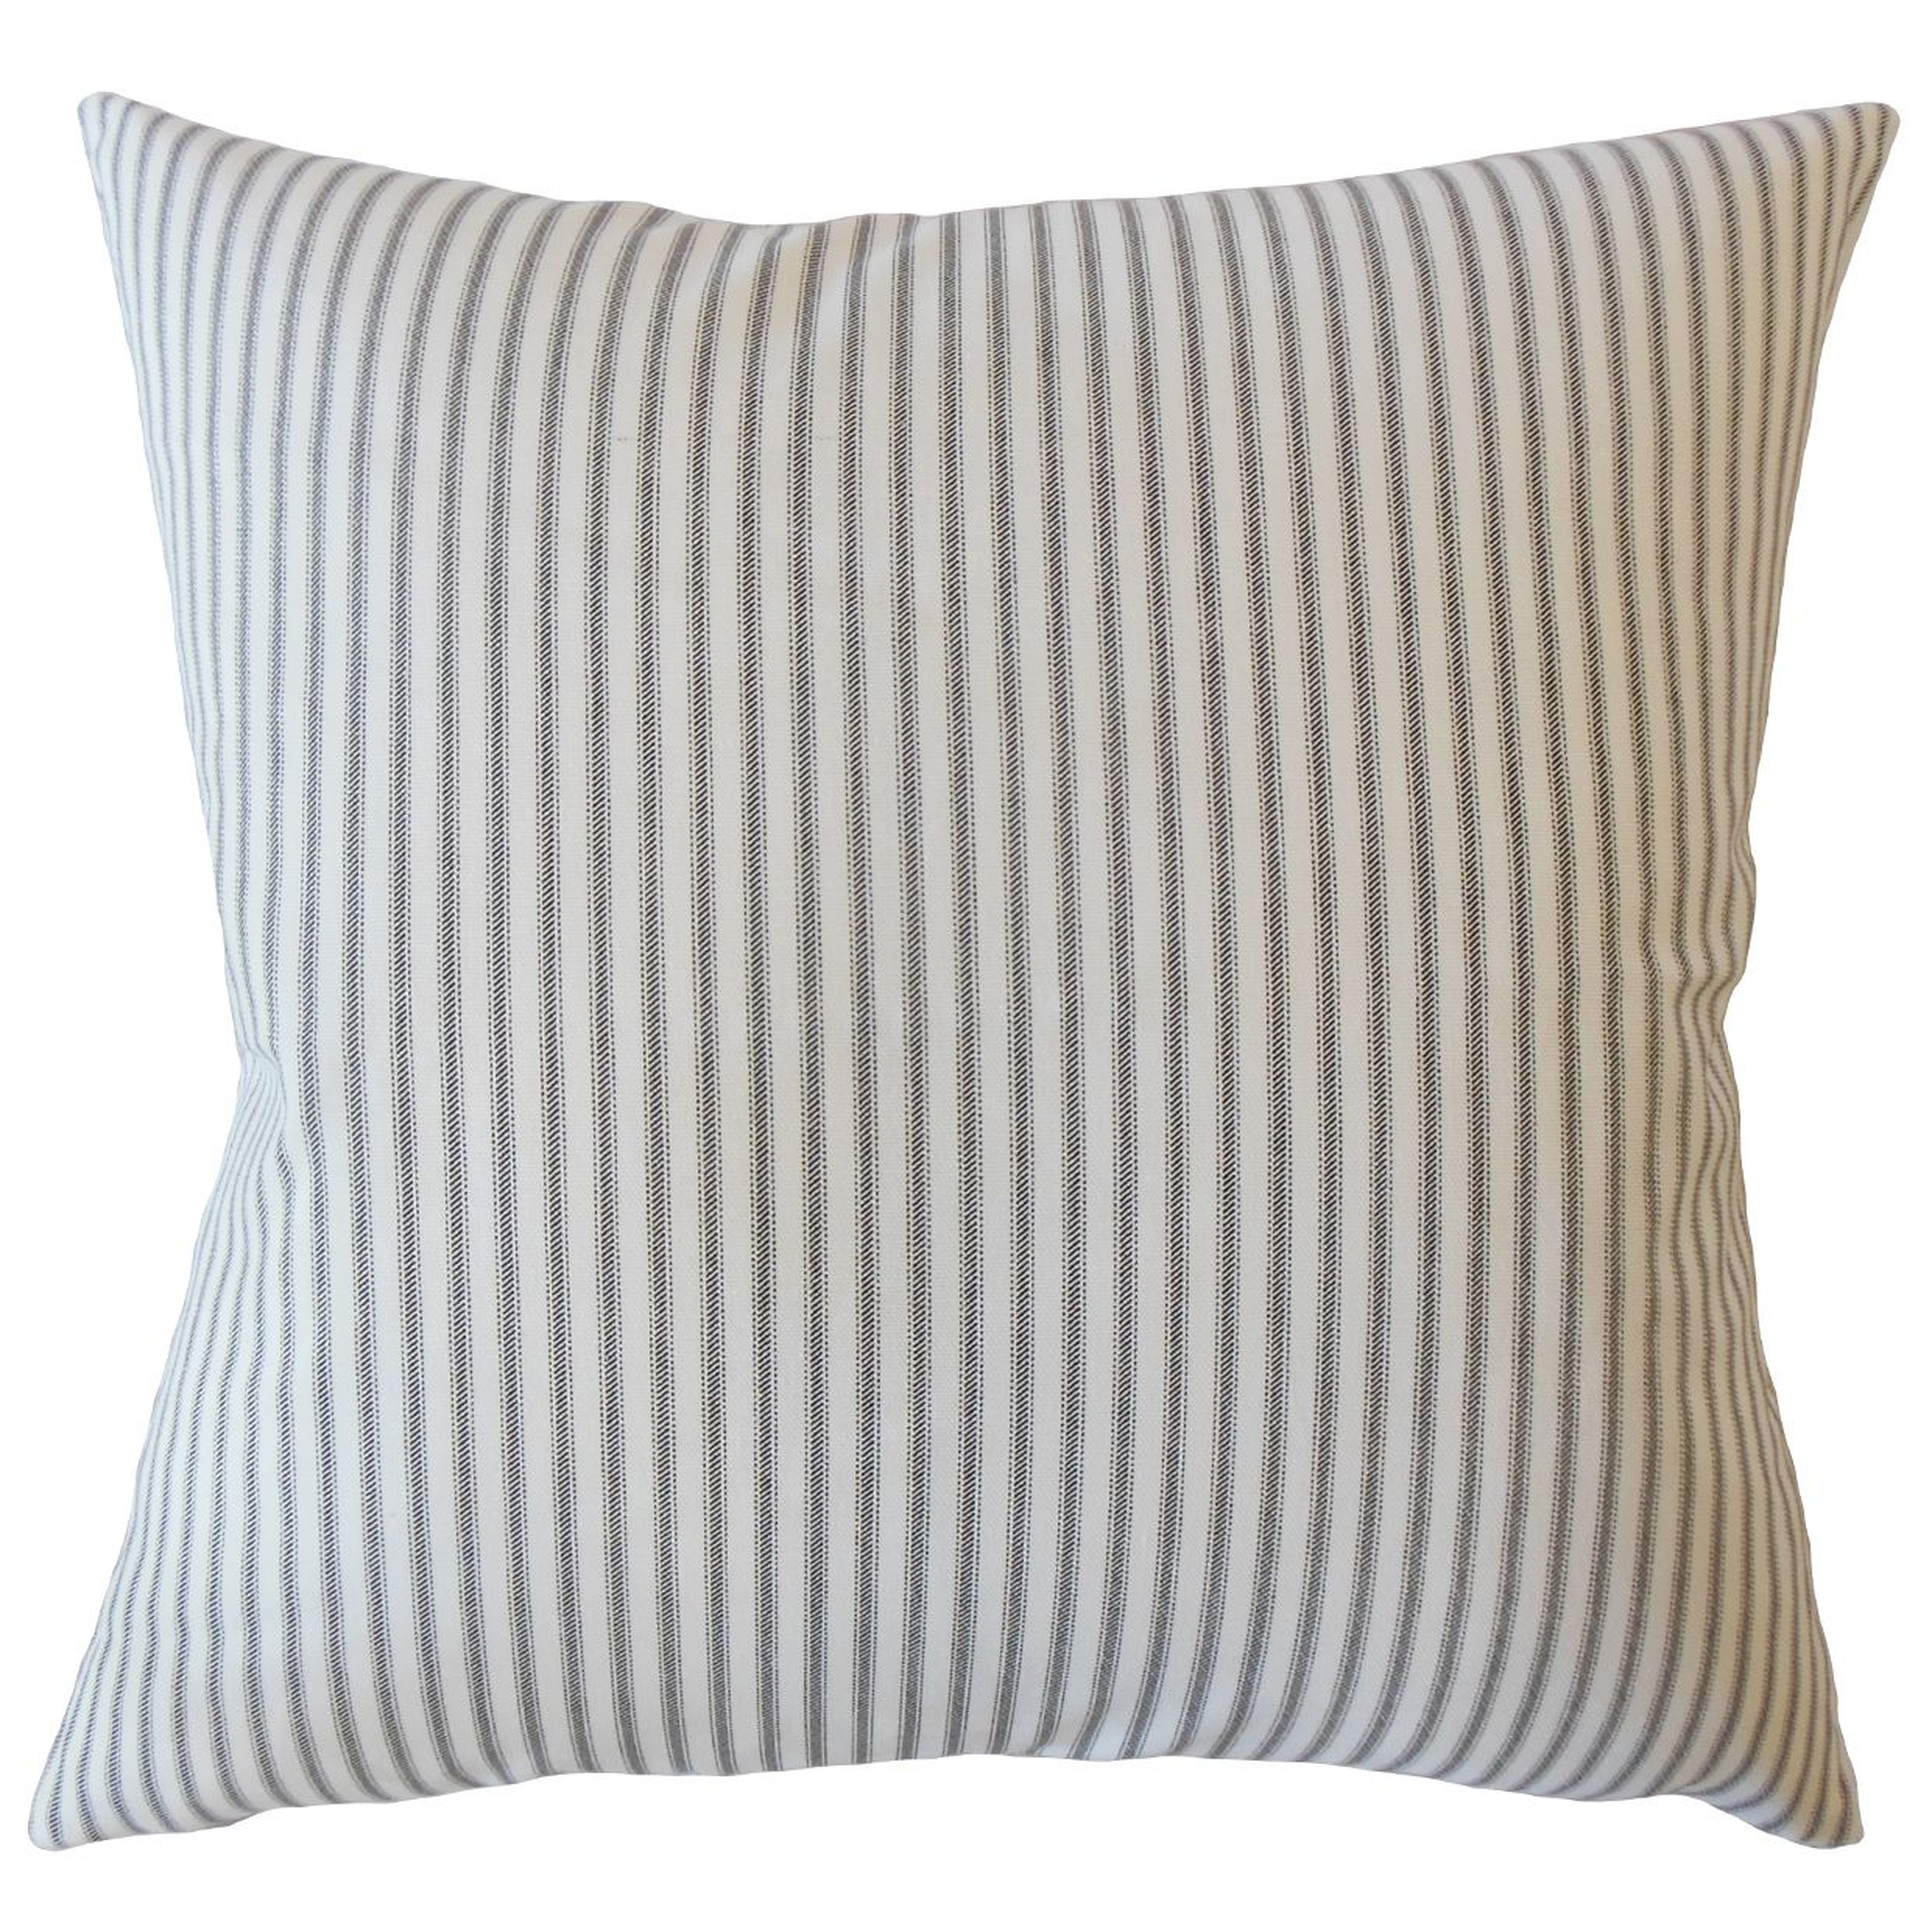 Ticking Stripe Pillow, Navy, 18" x 18" - Havenly Essentials